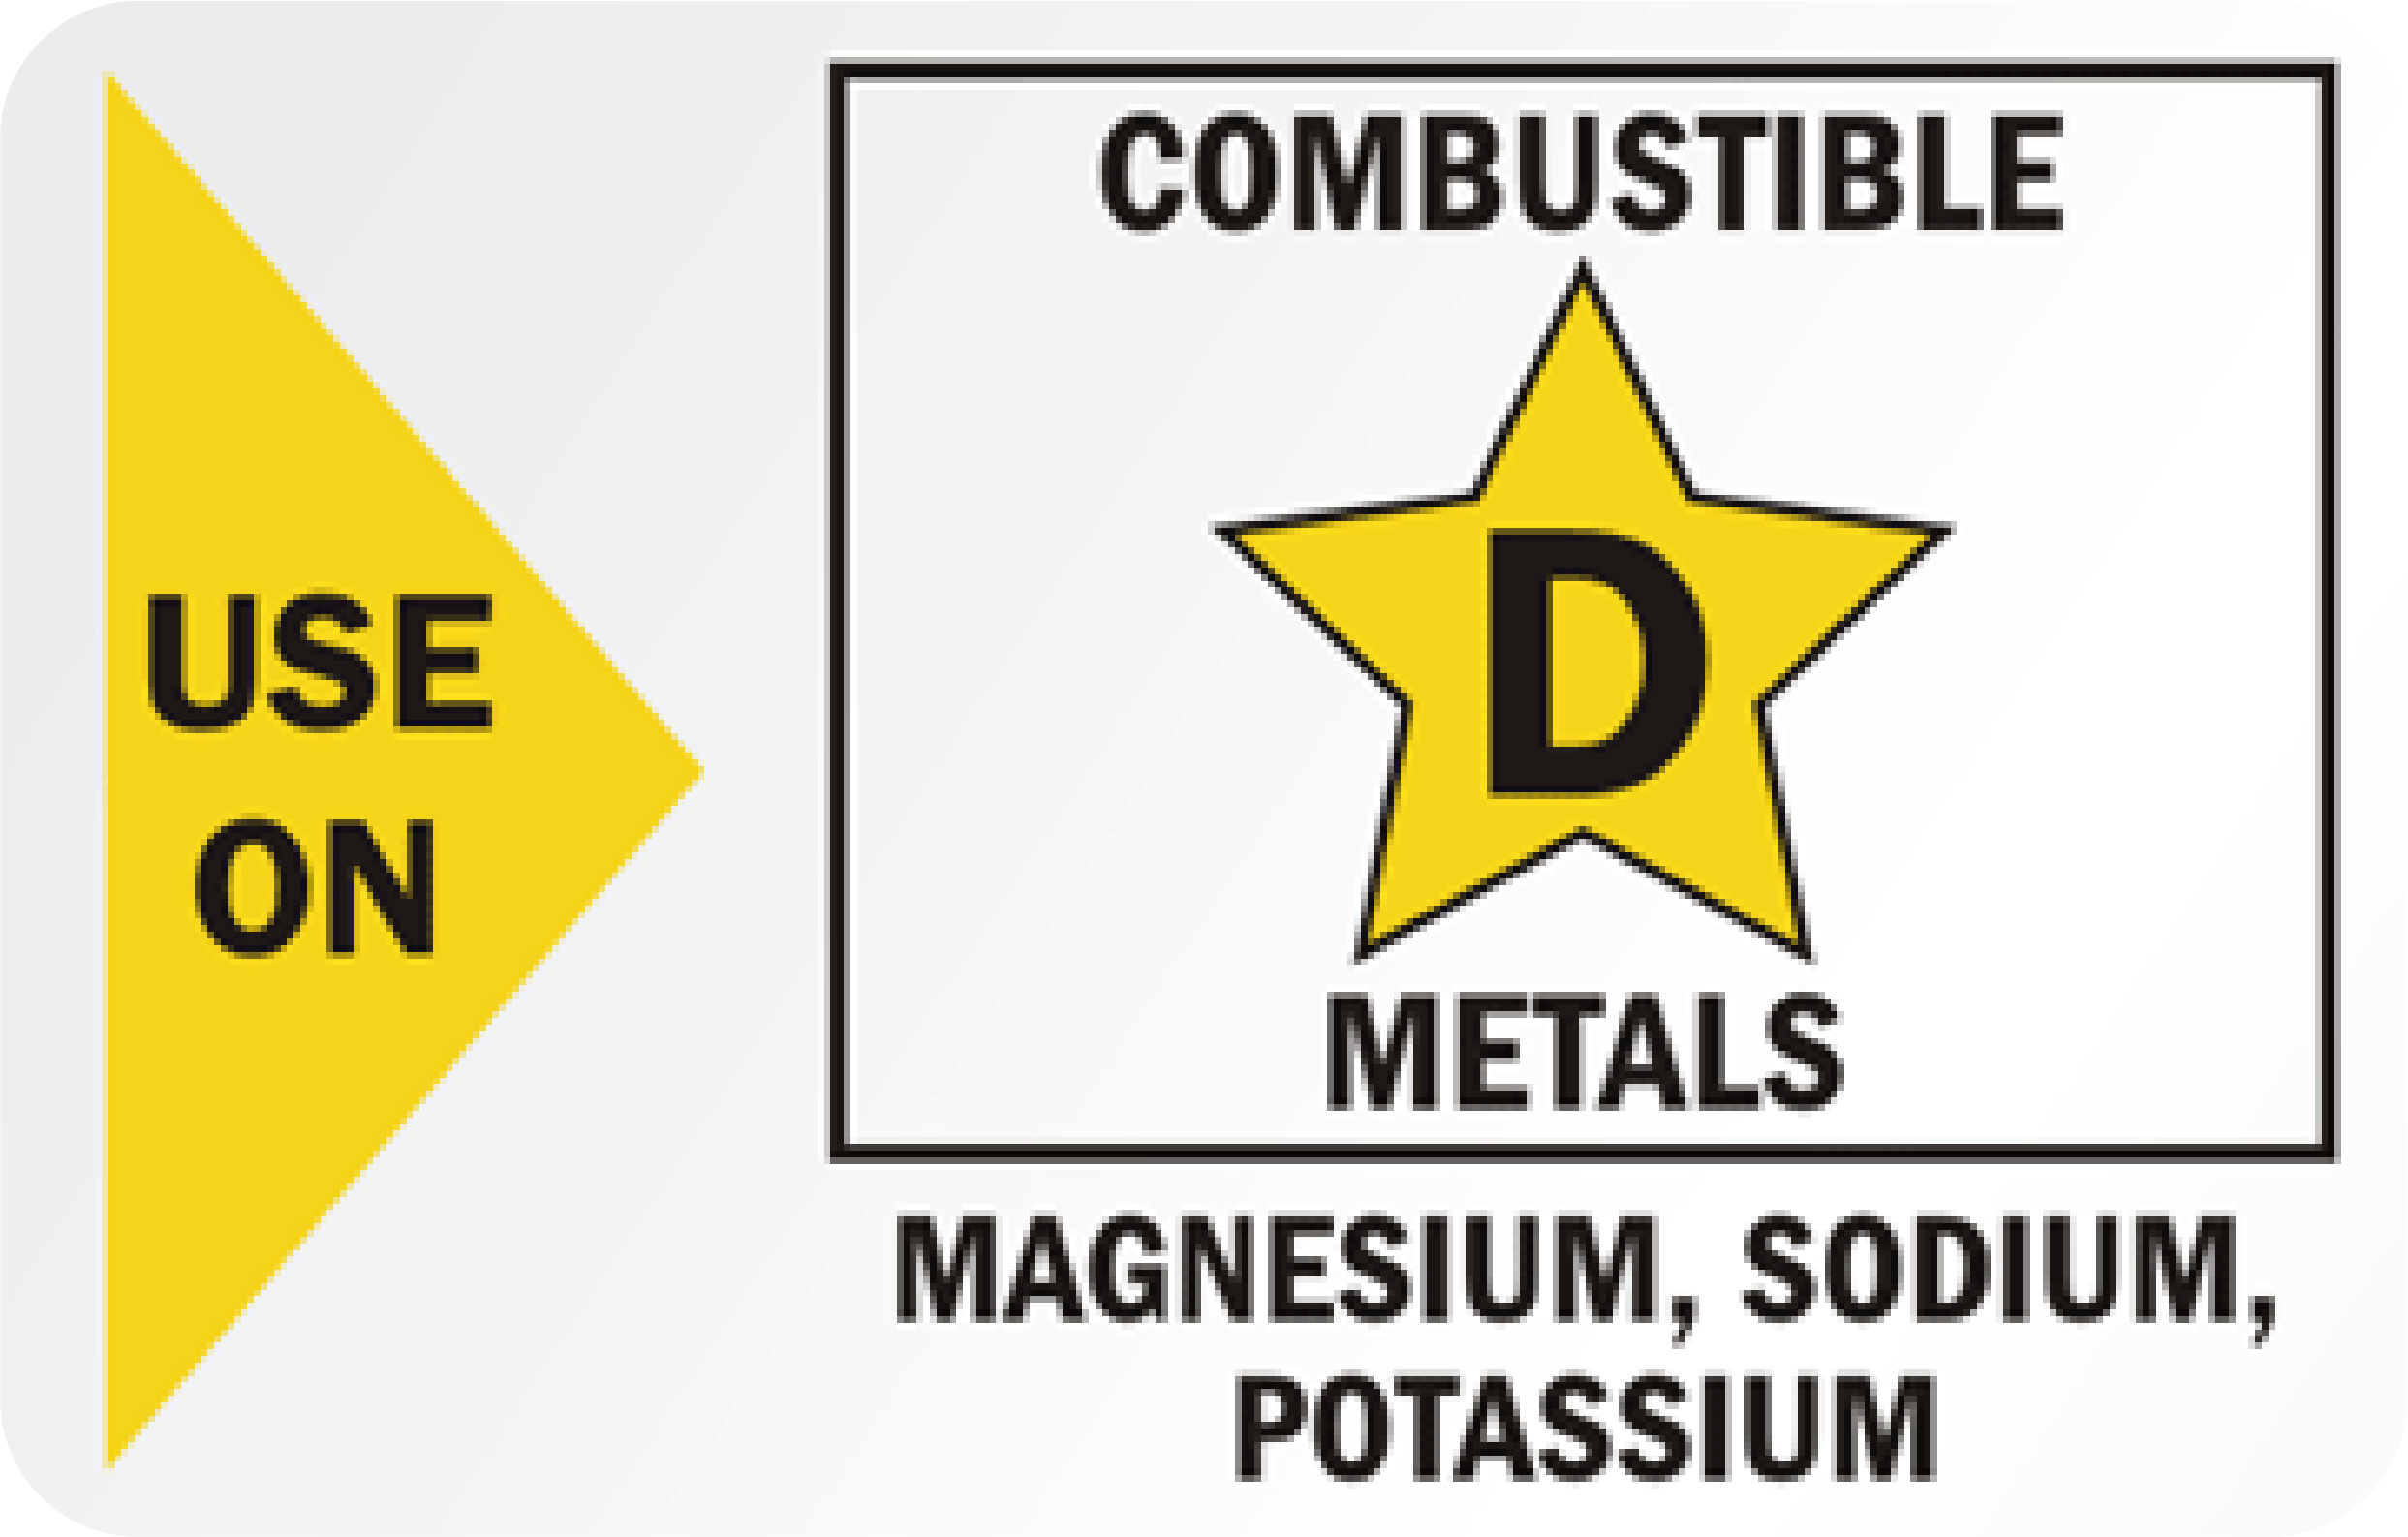 Combustible D Metals